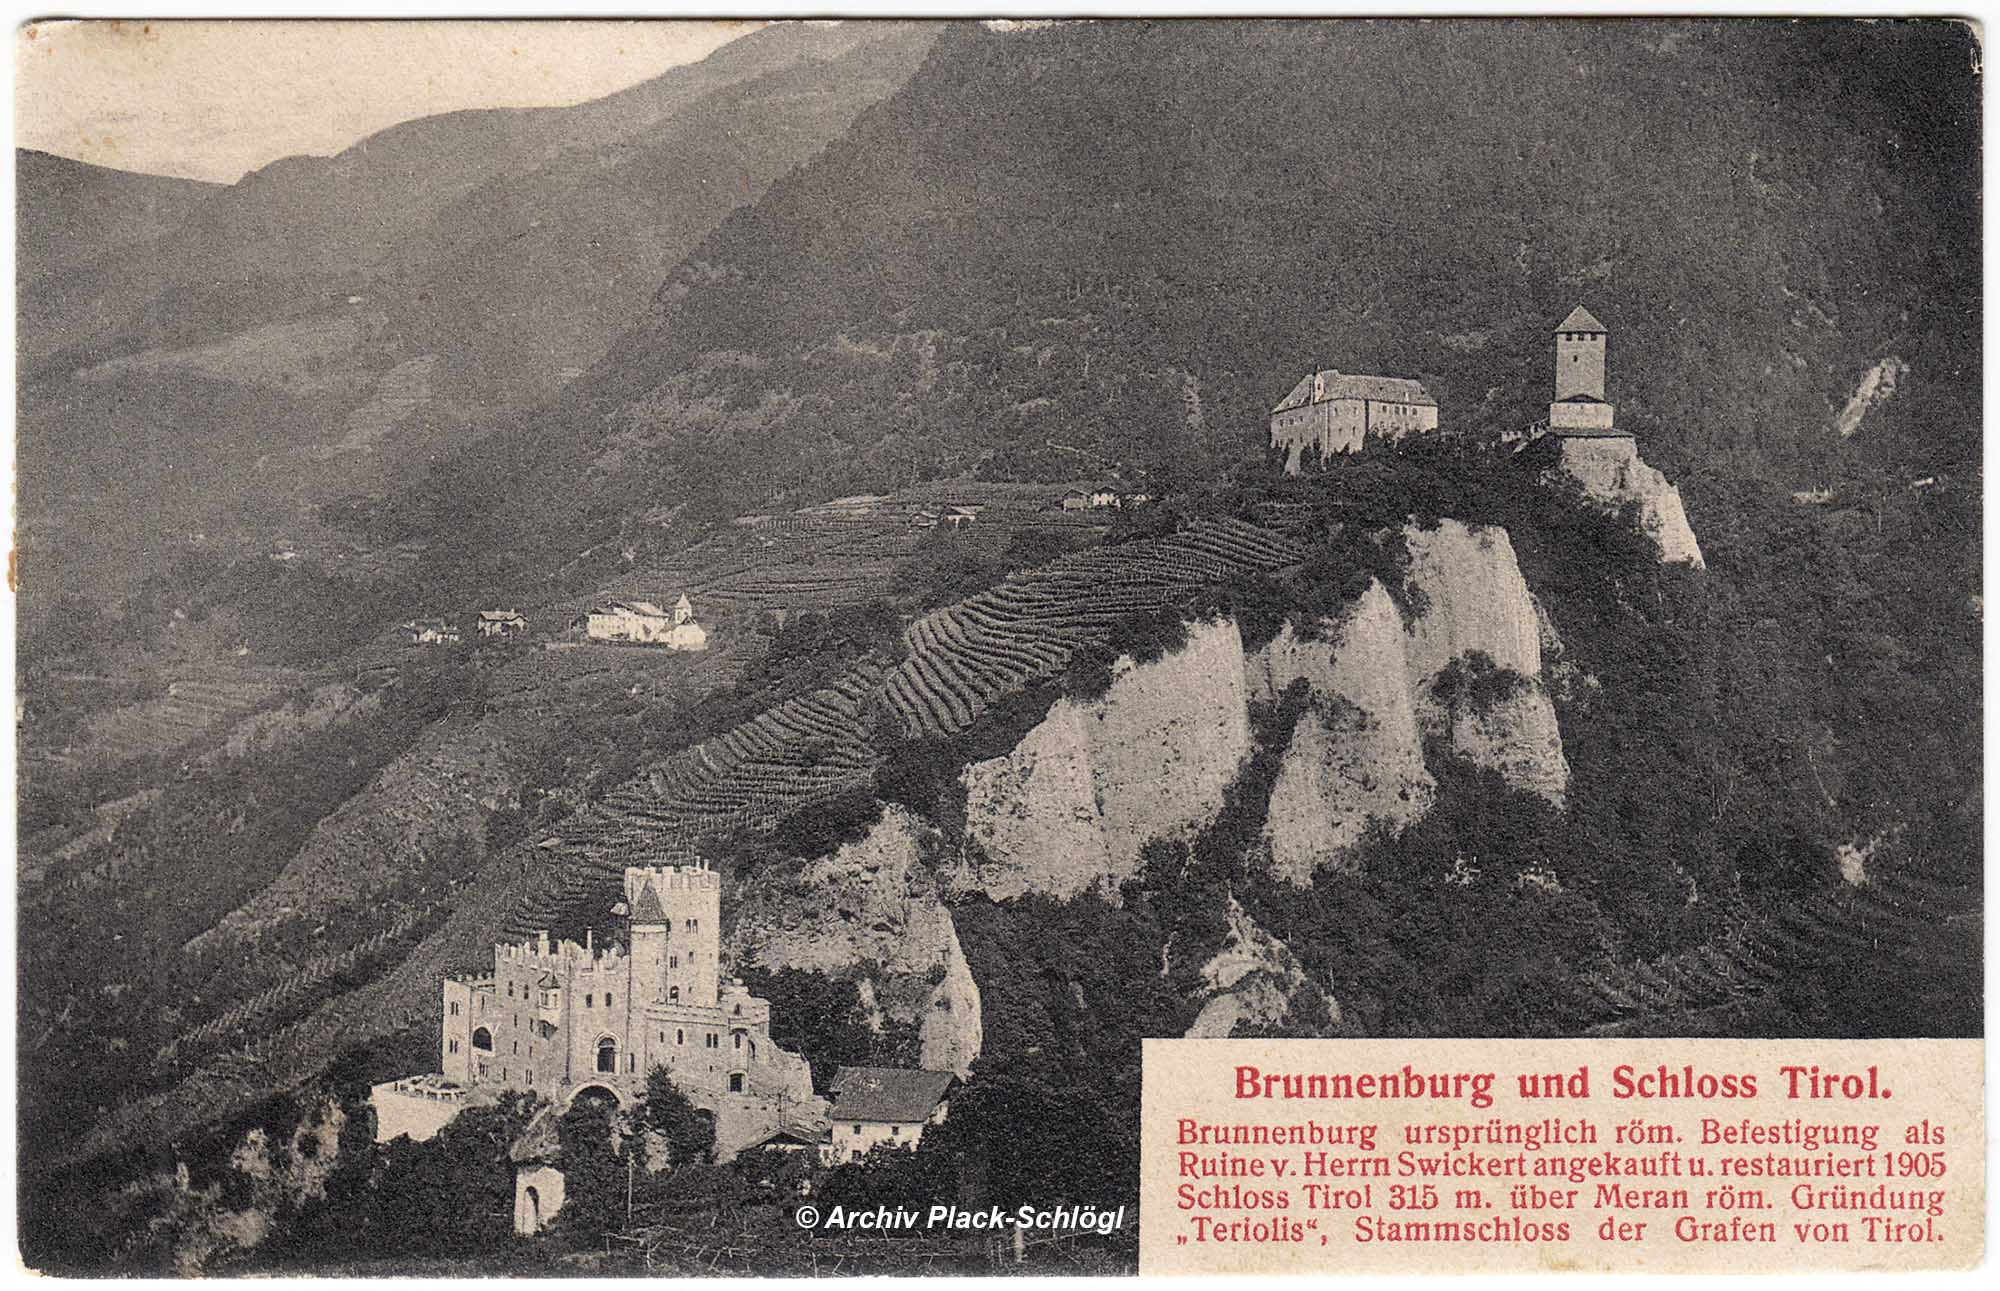 Brunnenburg und Schloss Tirol